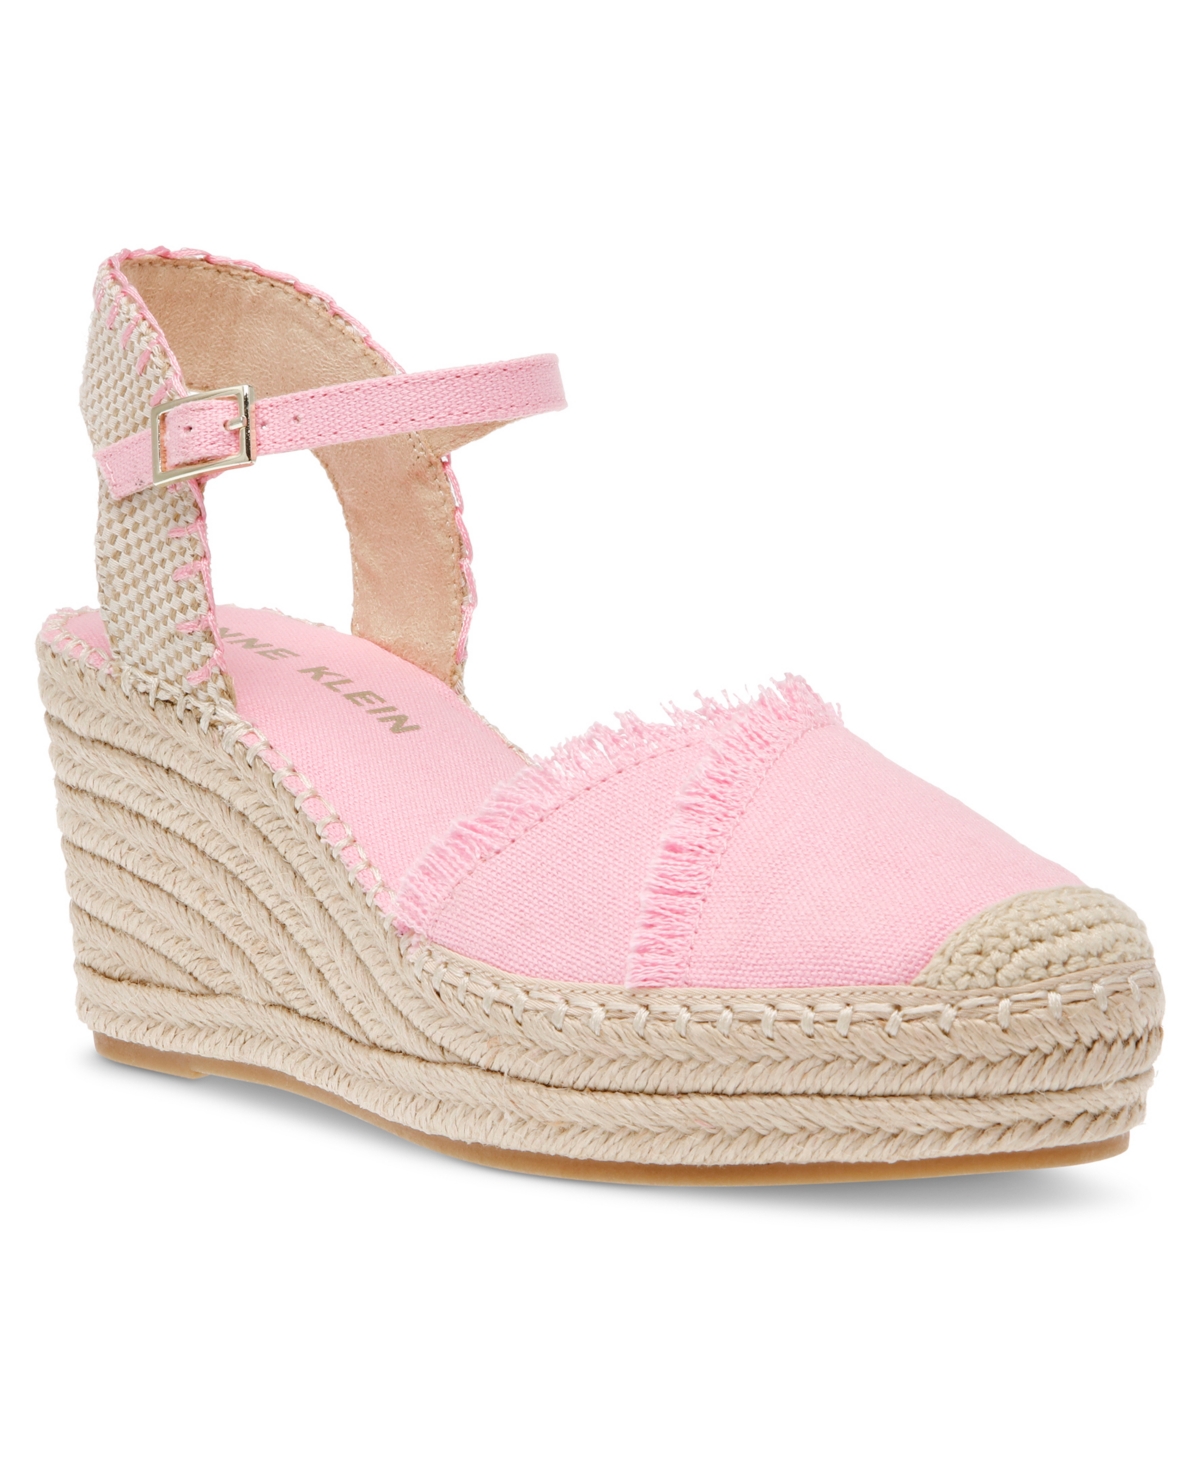 Women's Laken Espadrille Wedge Sandals - Pink Linen